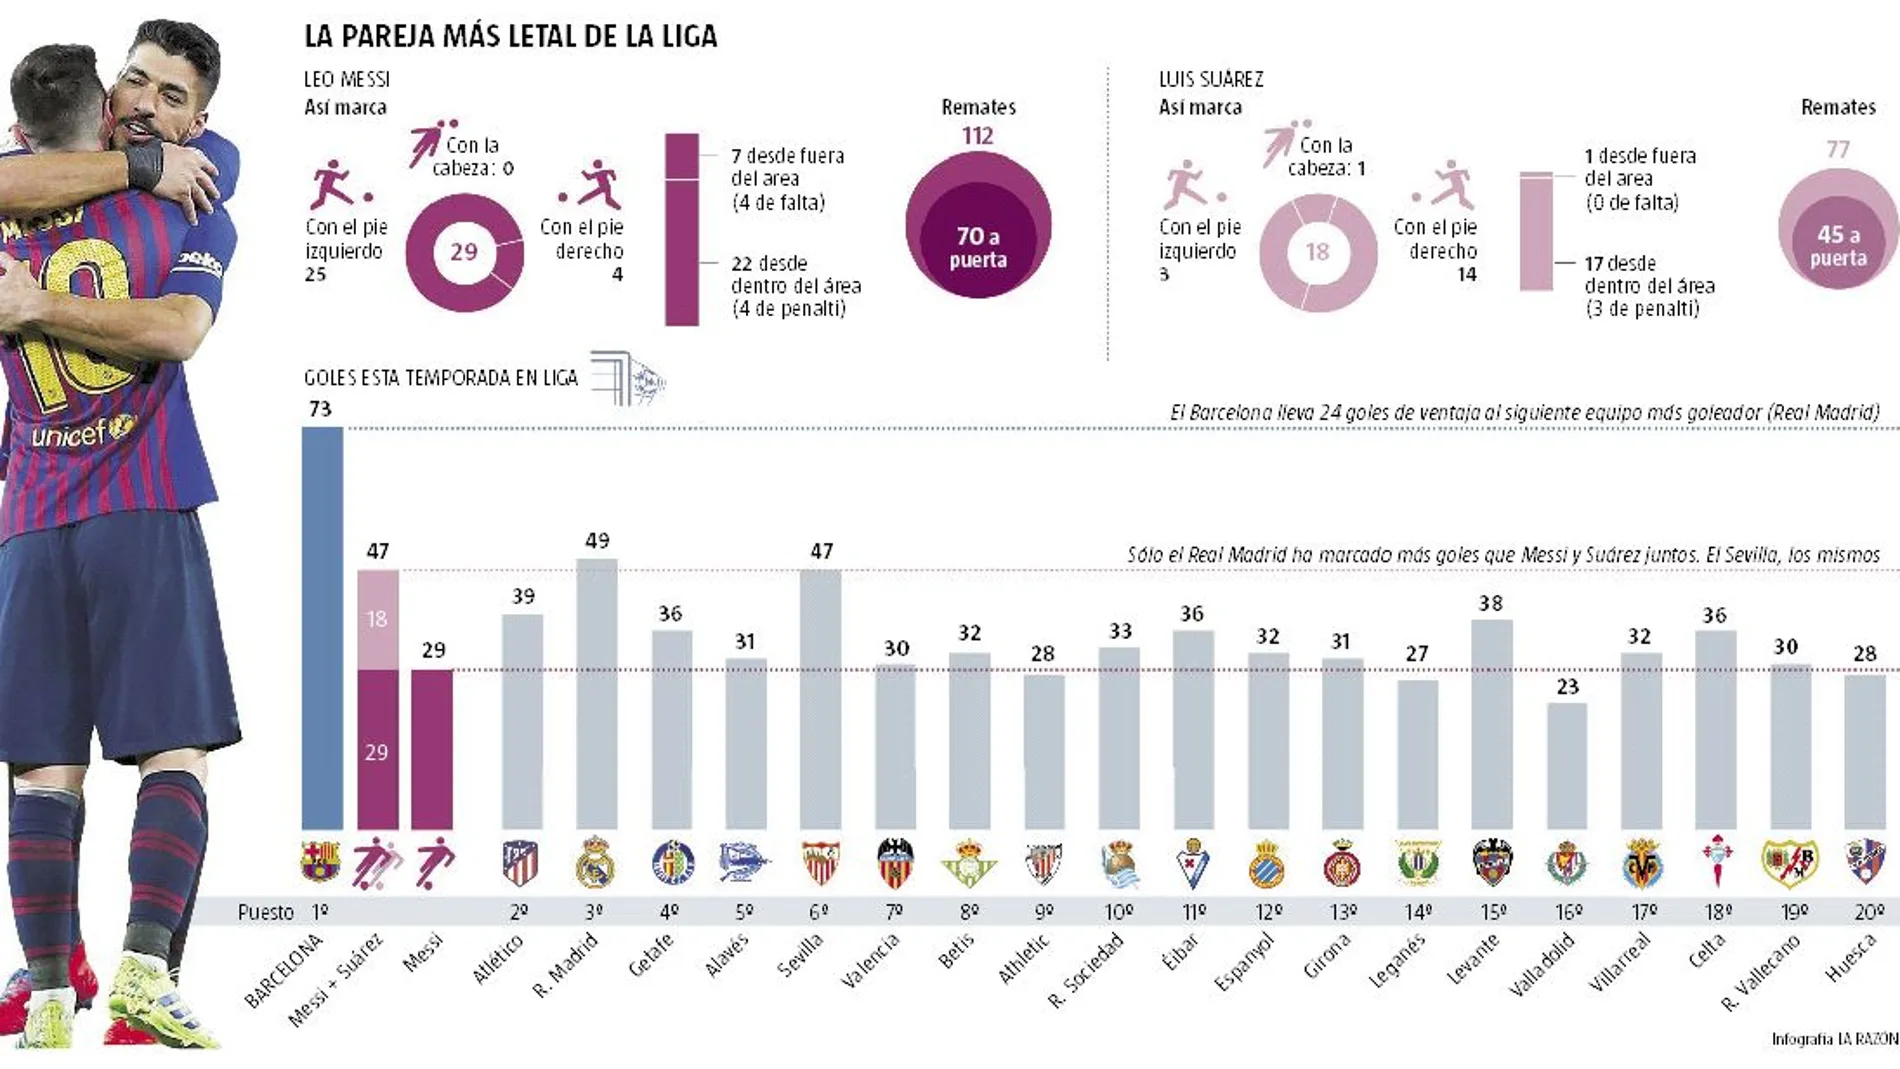 Luis Suárez y Messi han marcado más goles que 18 equipos de primera